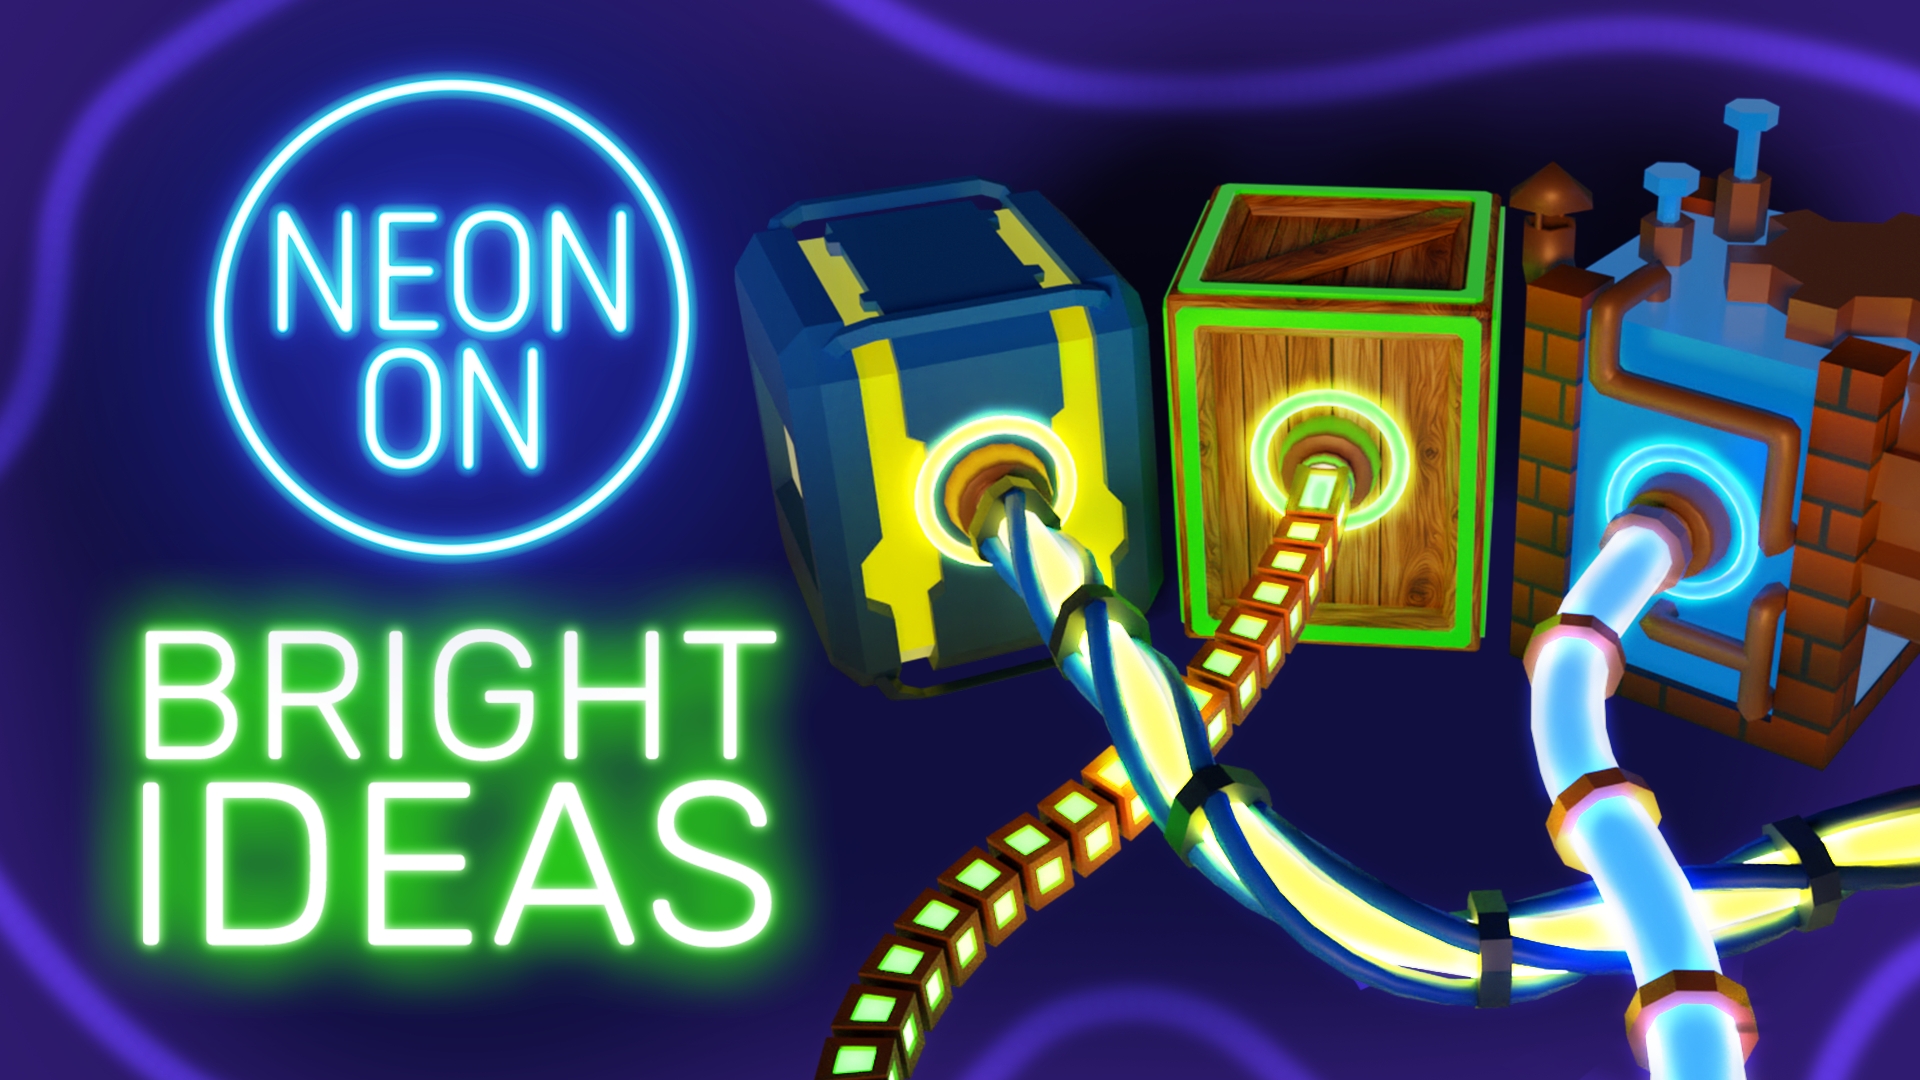 Neon On!: Bright Ideas